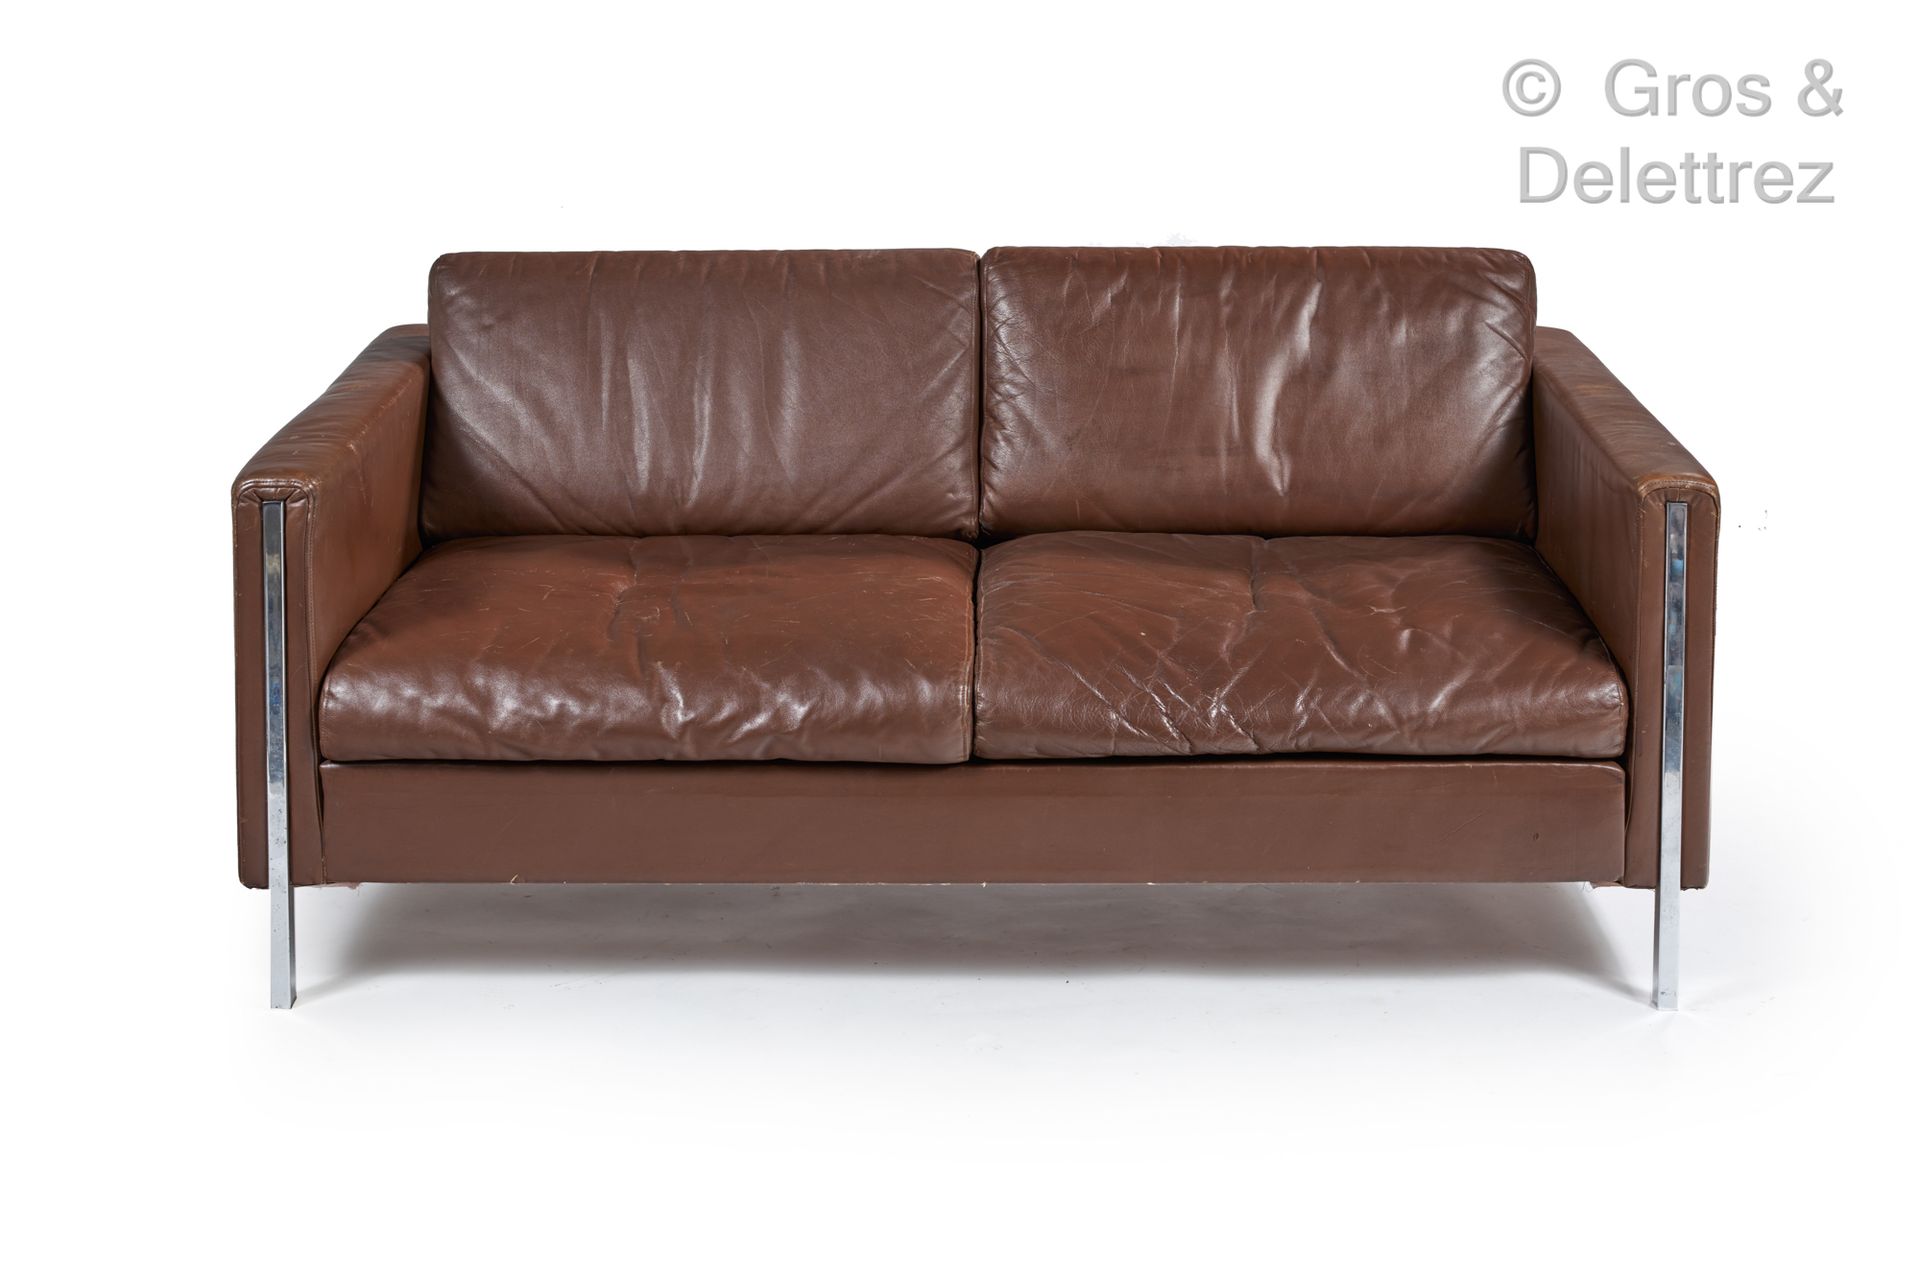 Null 皮埃尔-波林(1927-2009)

F442型沙发，镀铬金属结构，棕色皮革装饰。

艺术版》(Edition Artifort)

约1962年

&hellip;